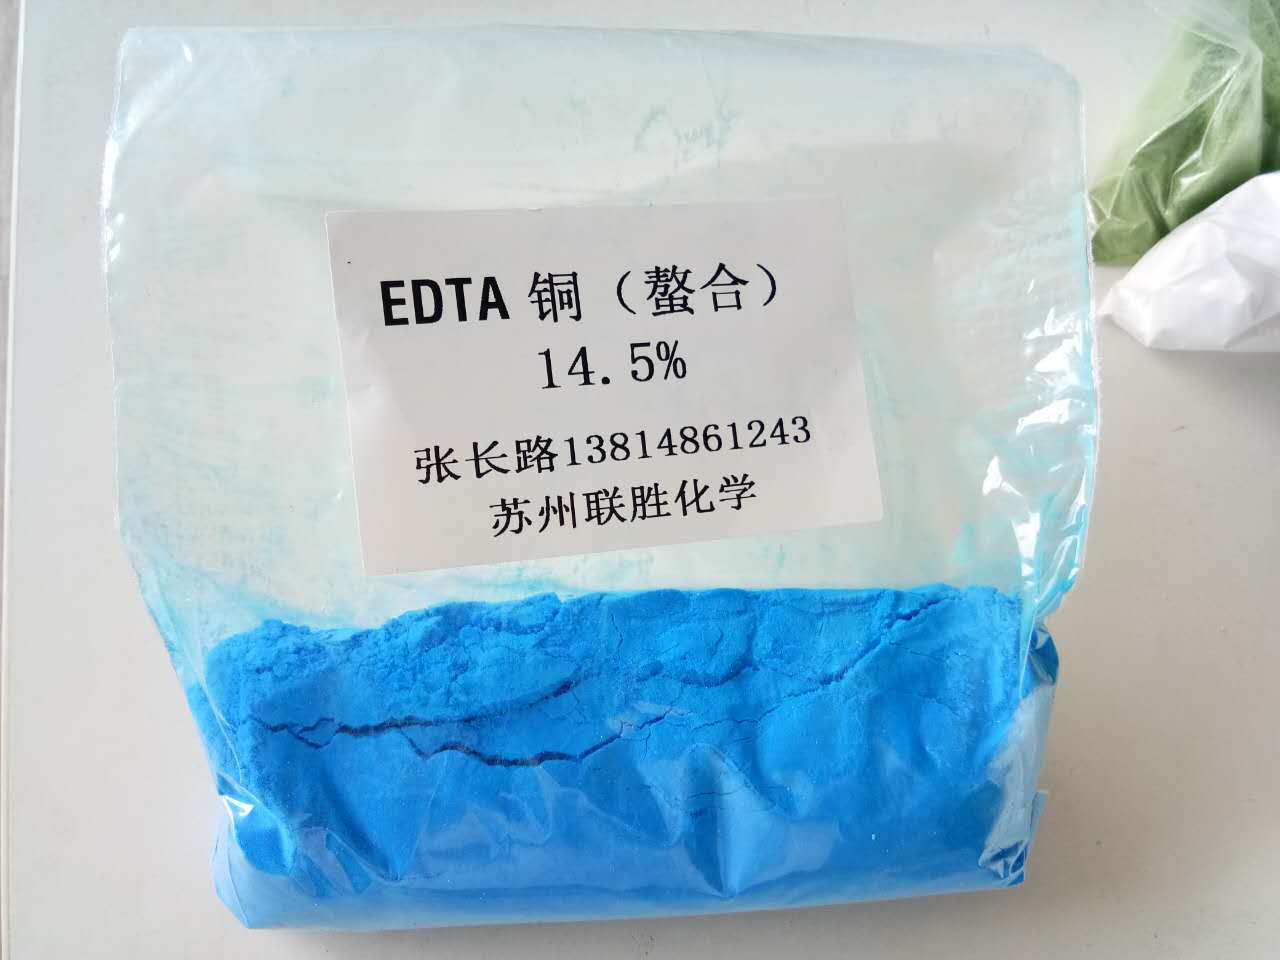 EDTA螯合中微量元素，糖淳中微量元素 EDTA螯合钙 EDTA螯合镁 EDTA螯合锰 EDTA螯合铁 EDTA螯合铜